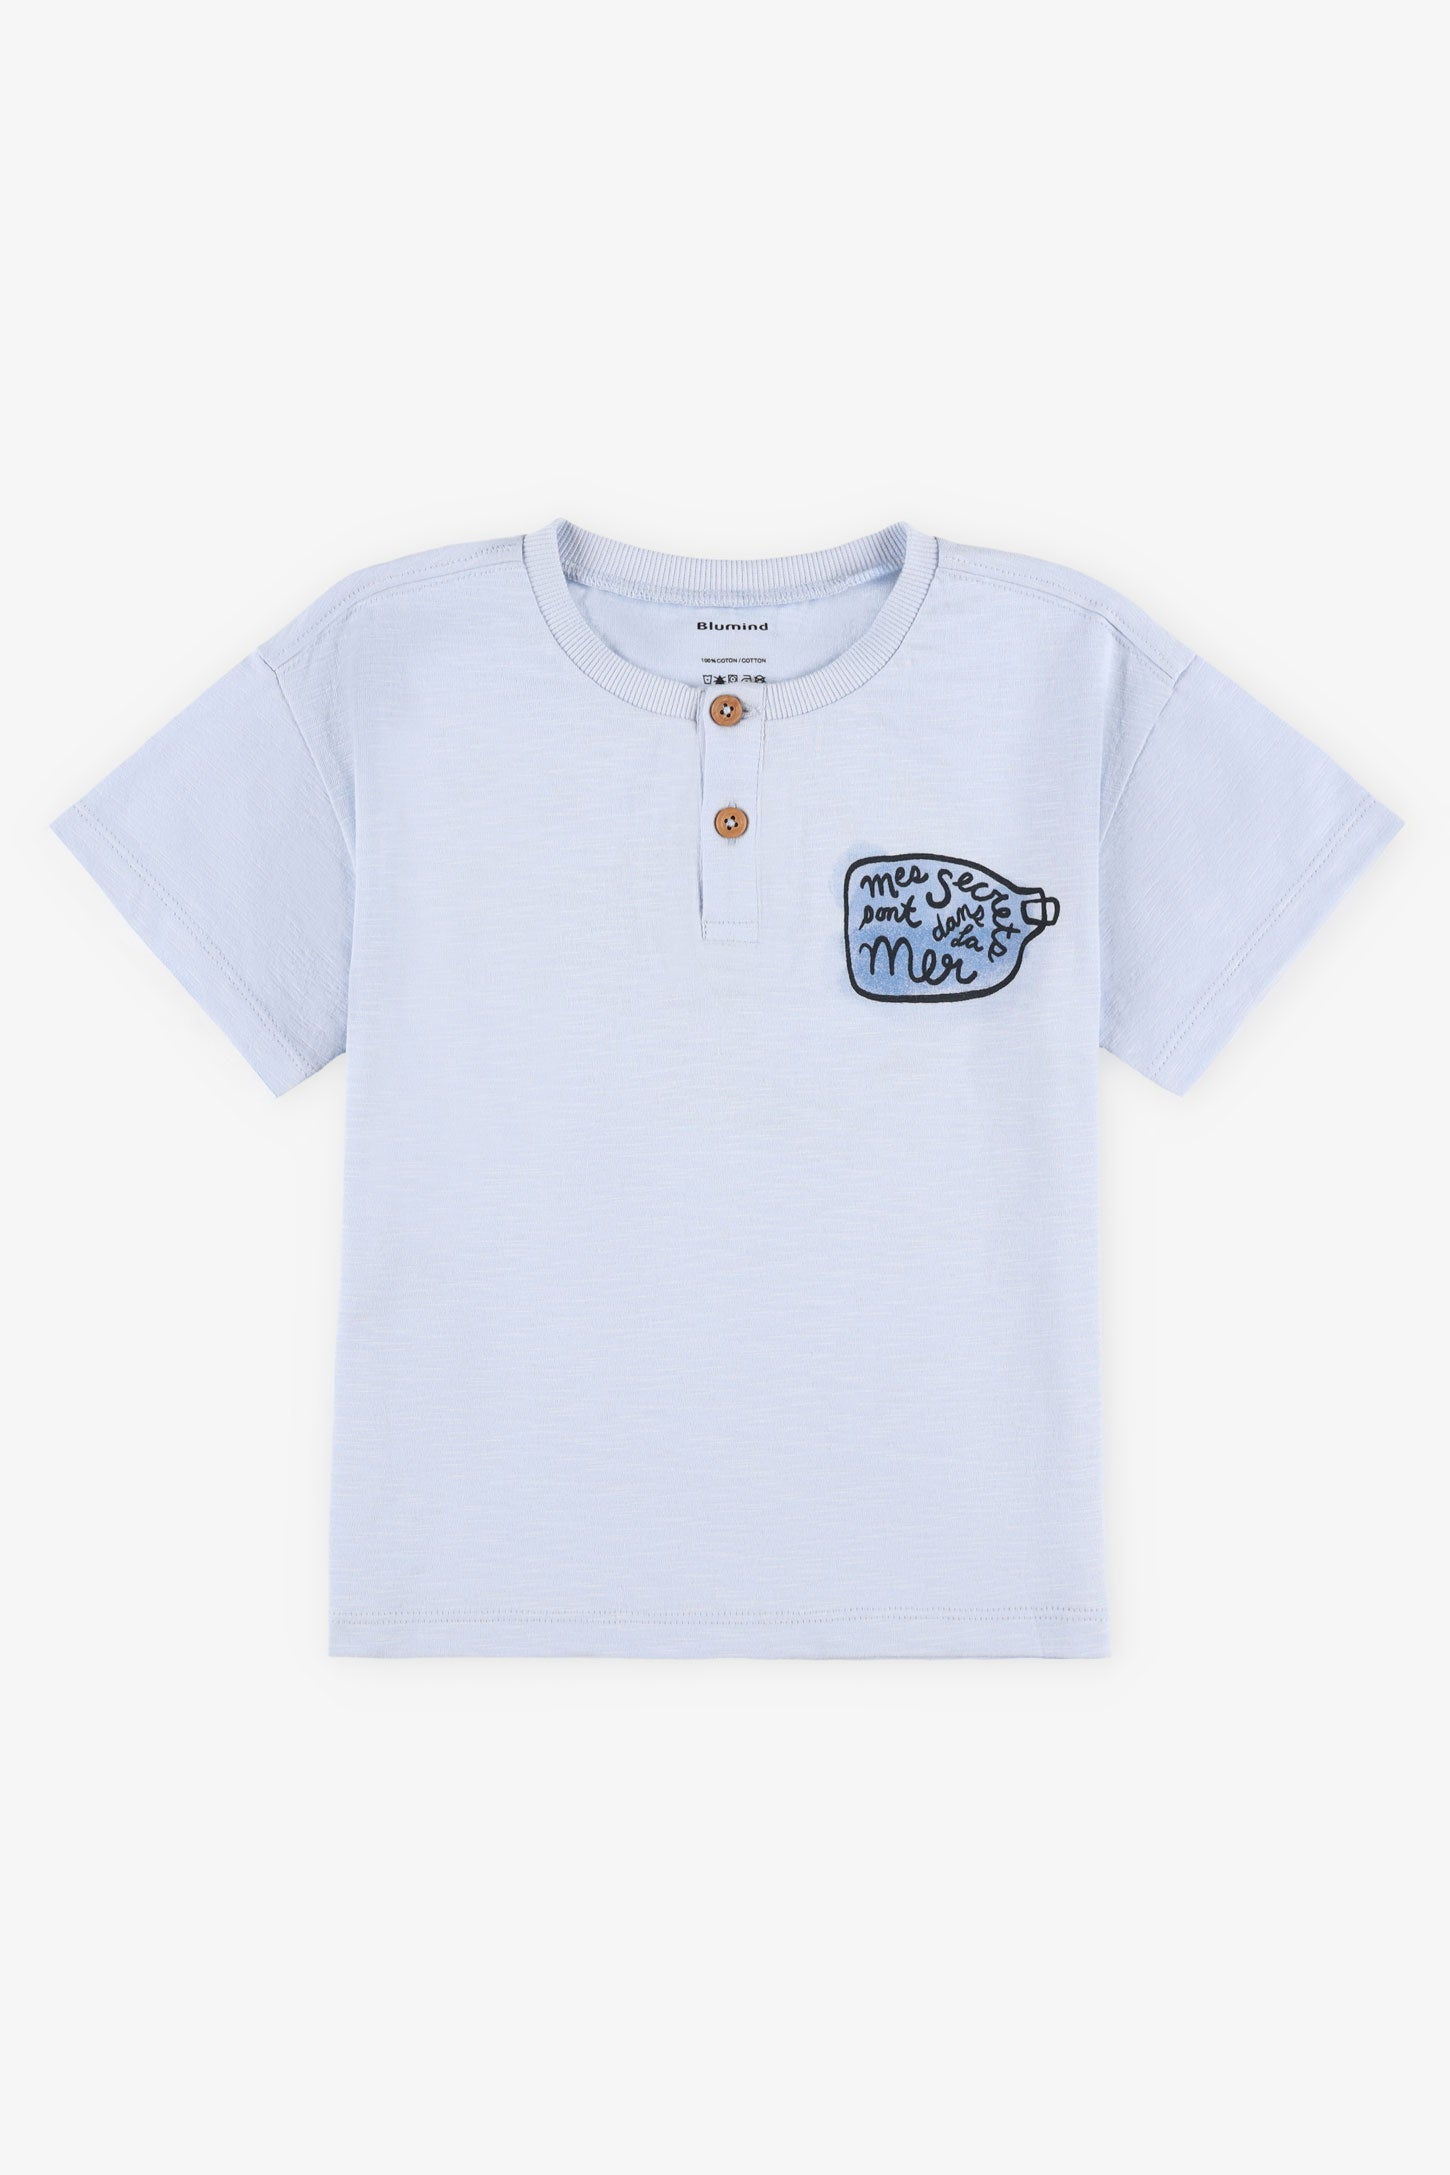 T-shirt col henley coton, 2T-3T - Bébé garçon && BLEU